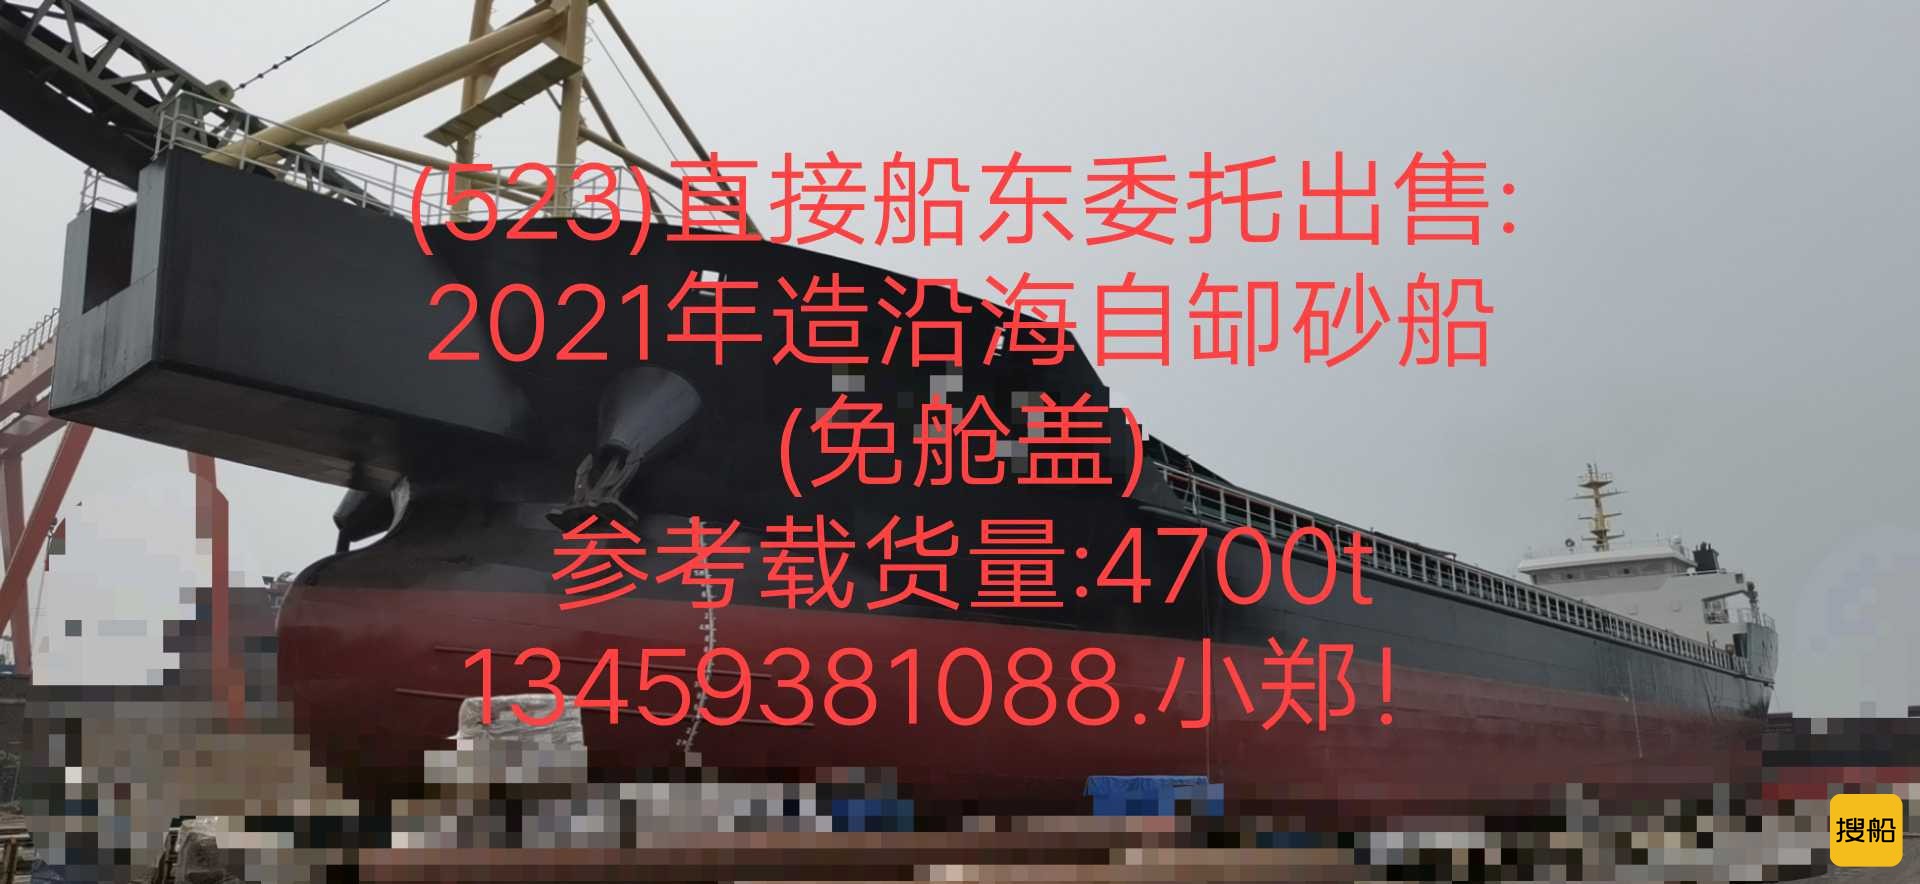 出售:2021年造沿海6500吨自缷砂船